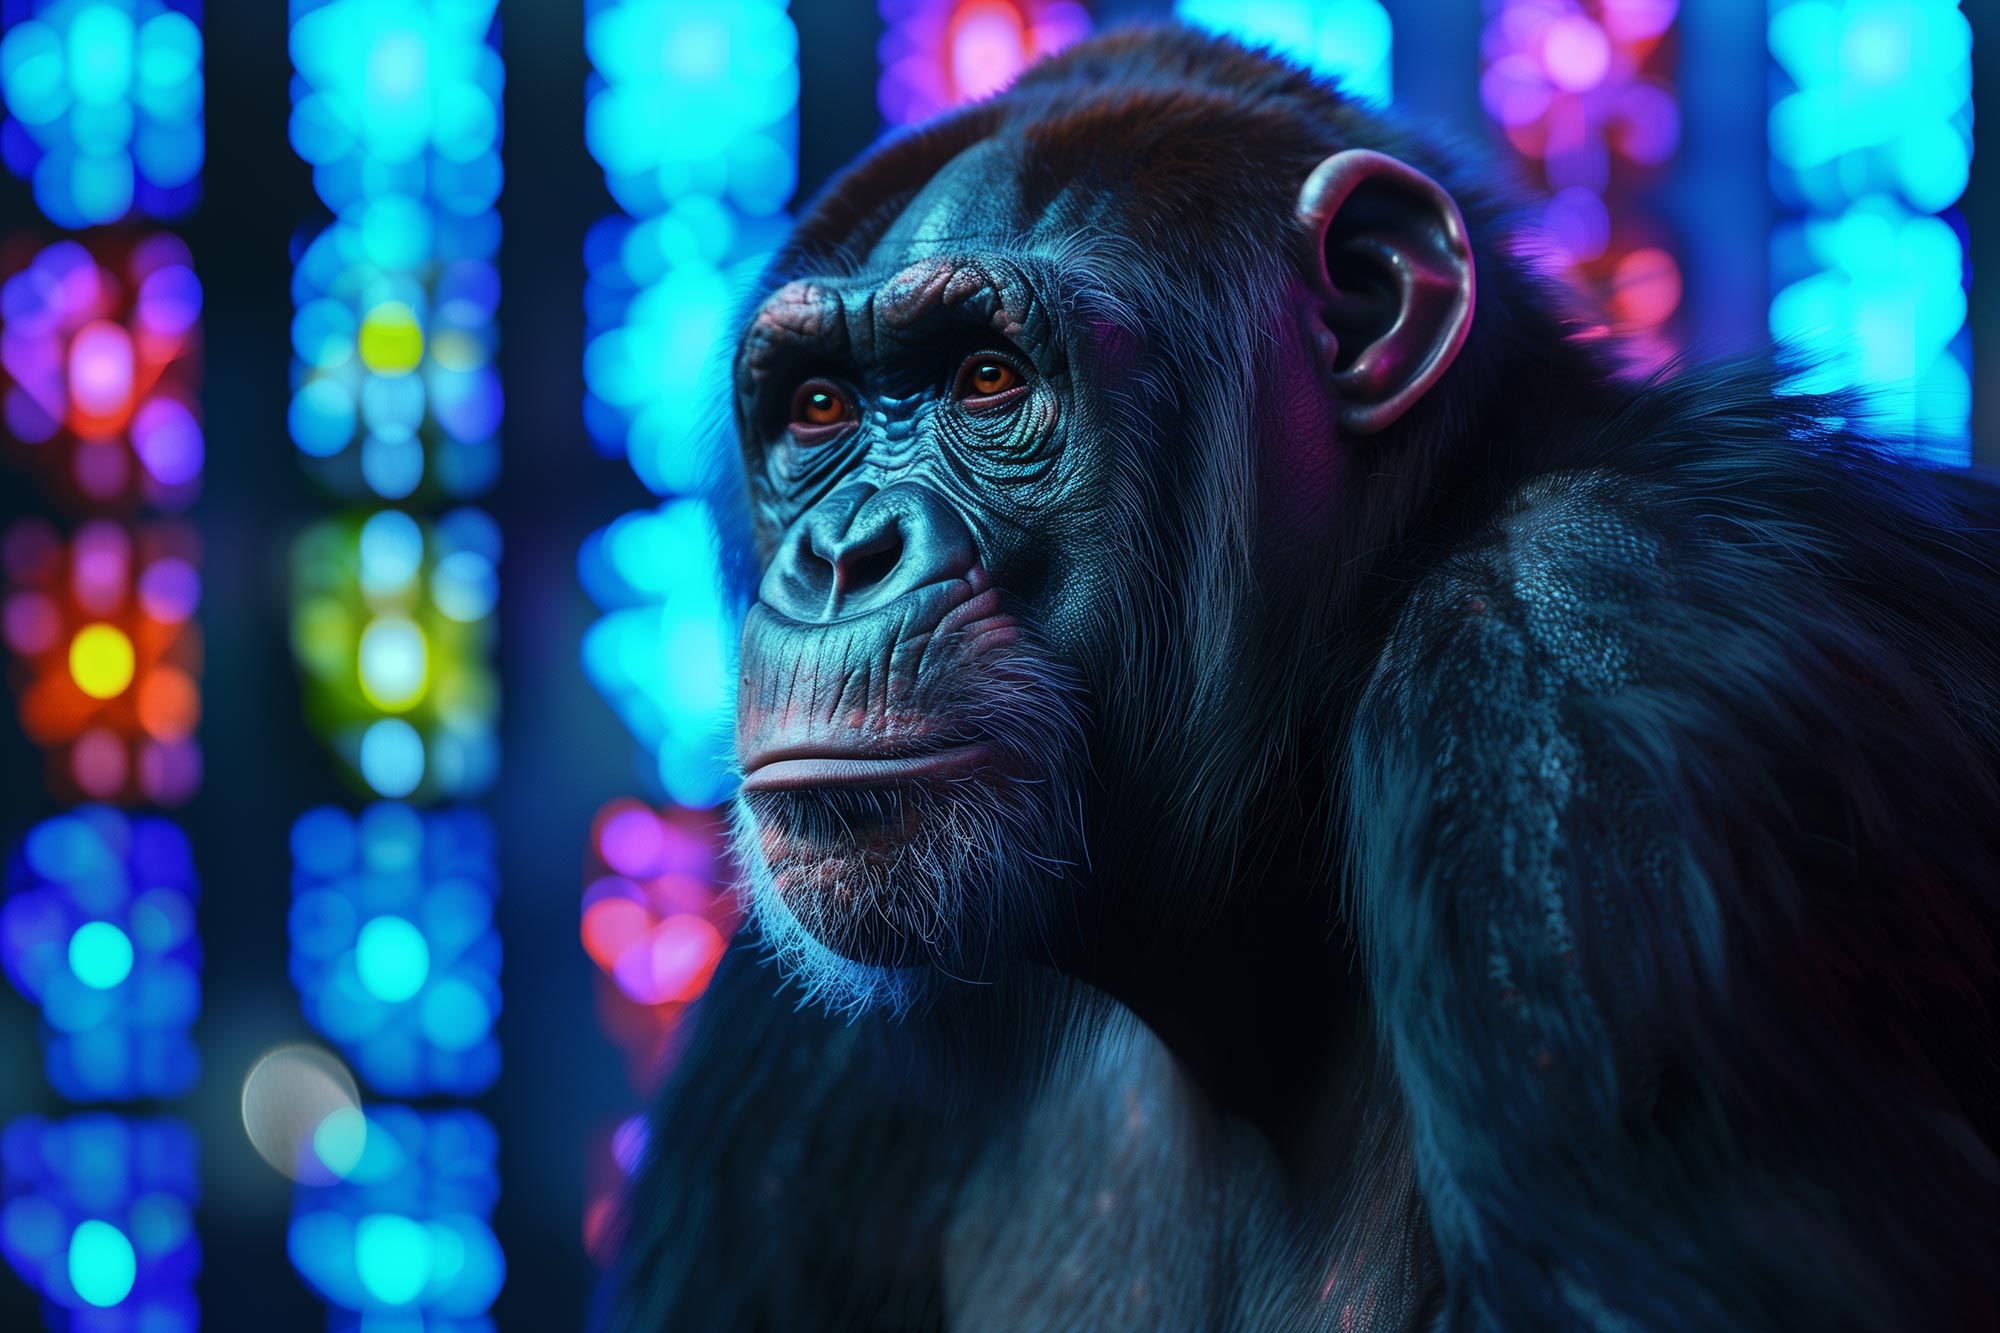 大型類人猿の最初の完全な染色体配列によって明らかになった驚くべき進化の洞察